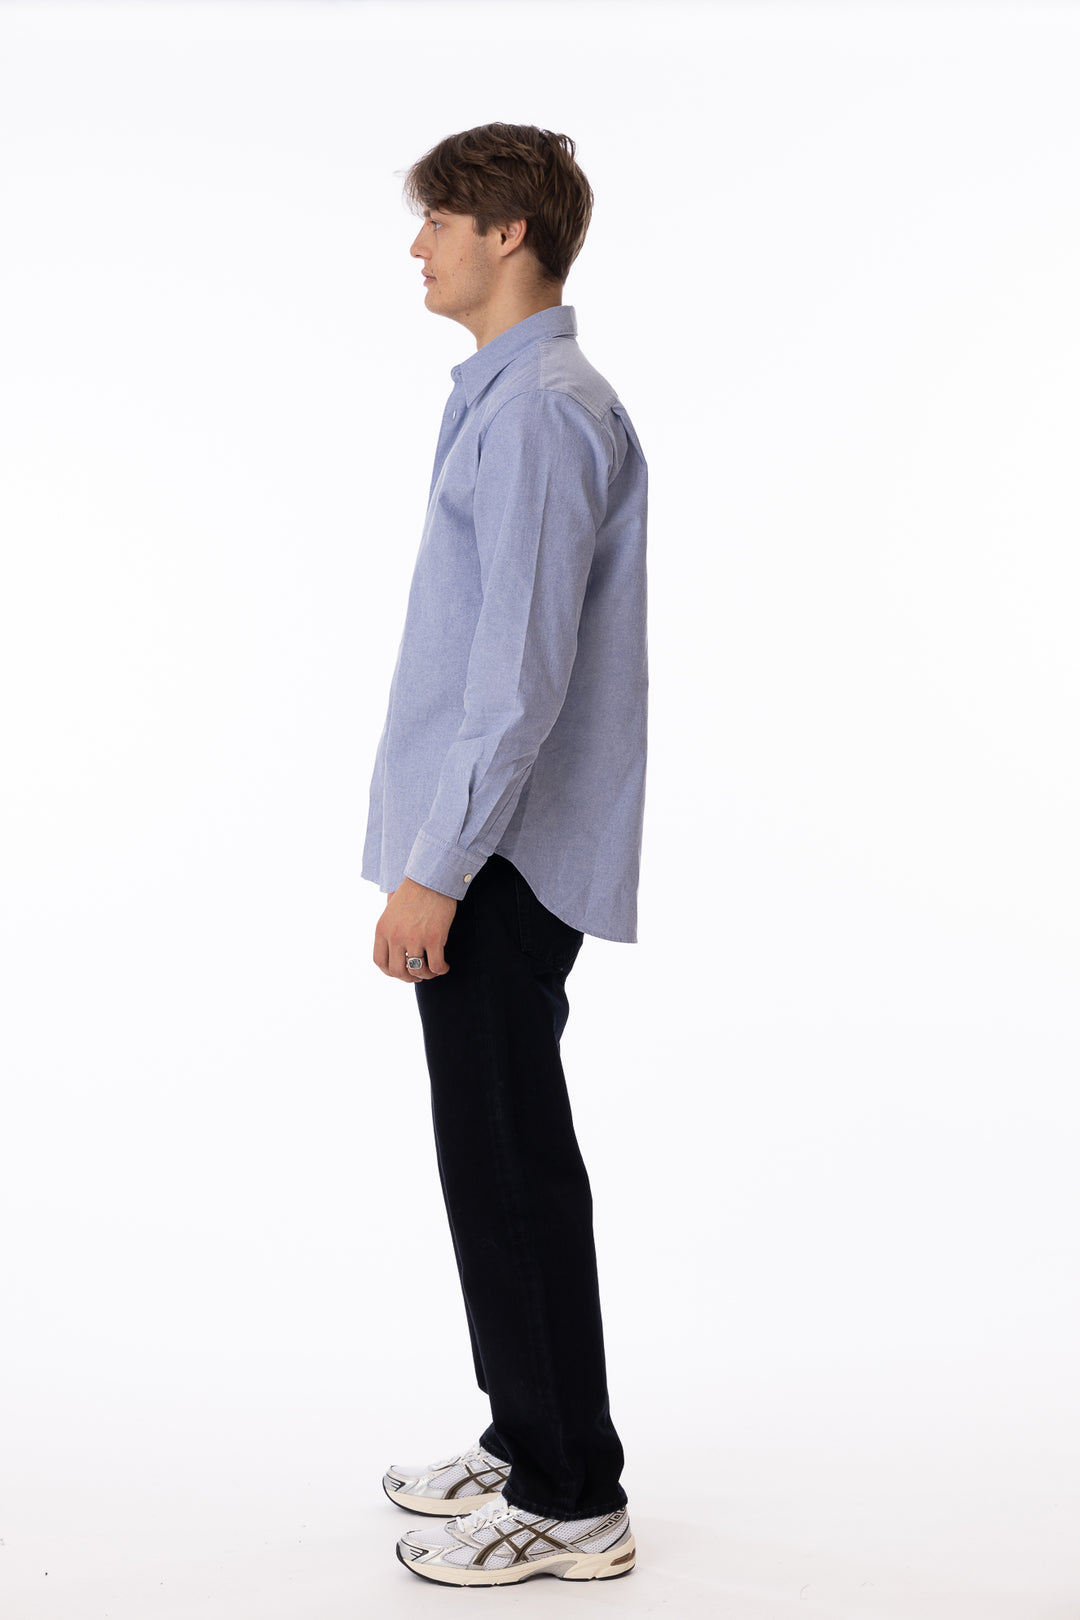 Oxford Shirt Light Blue-Skjorter-Bogartstore